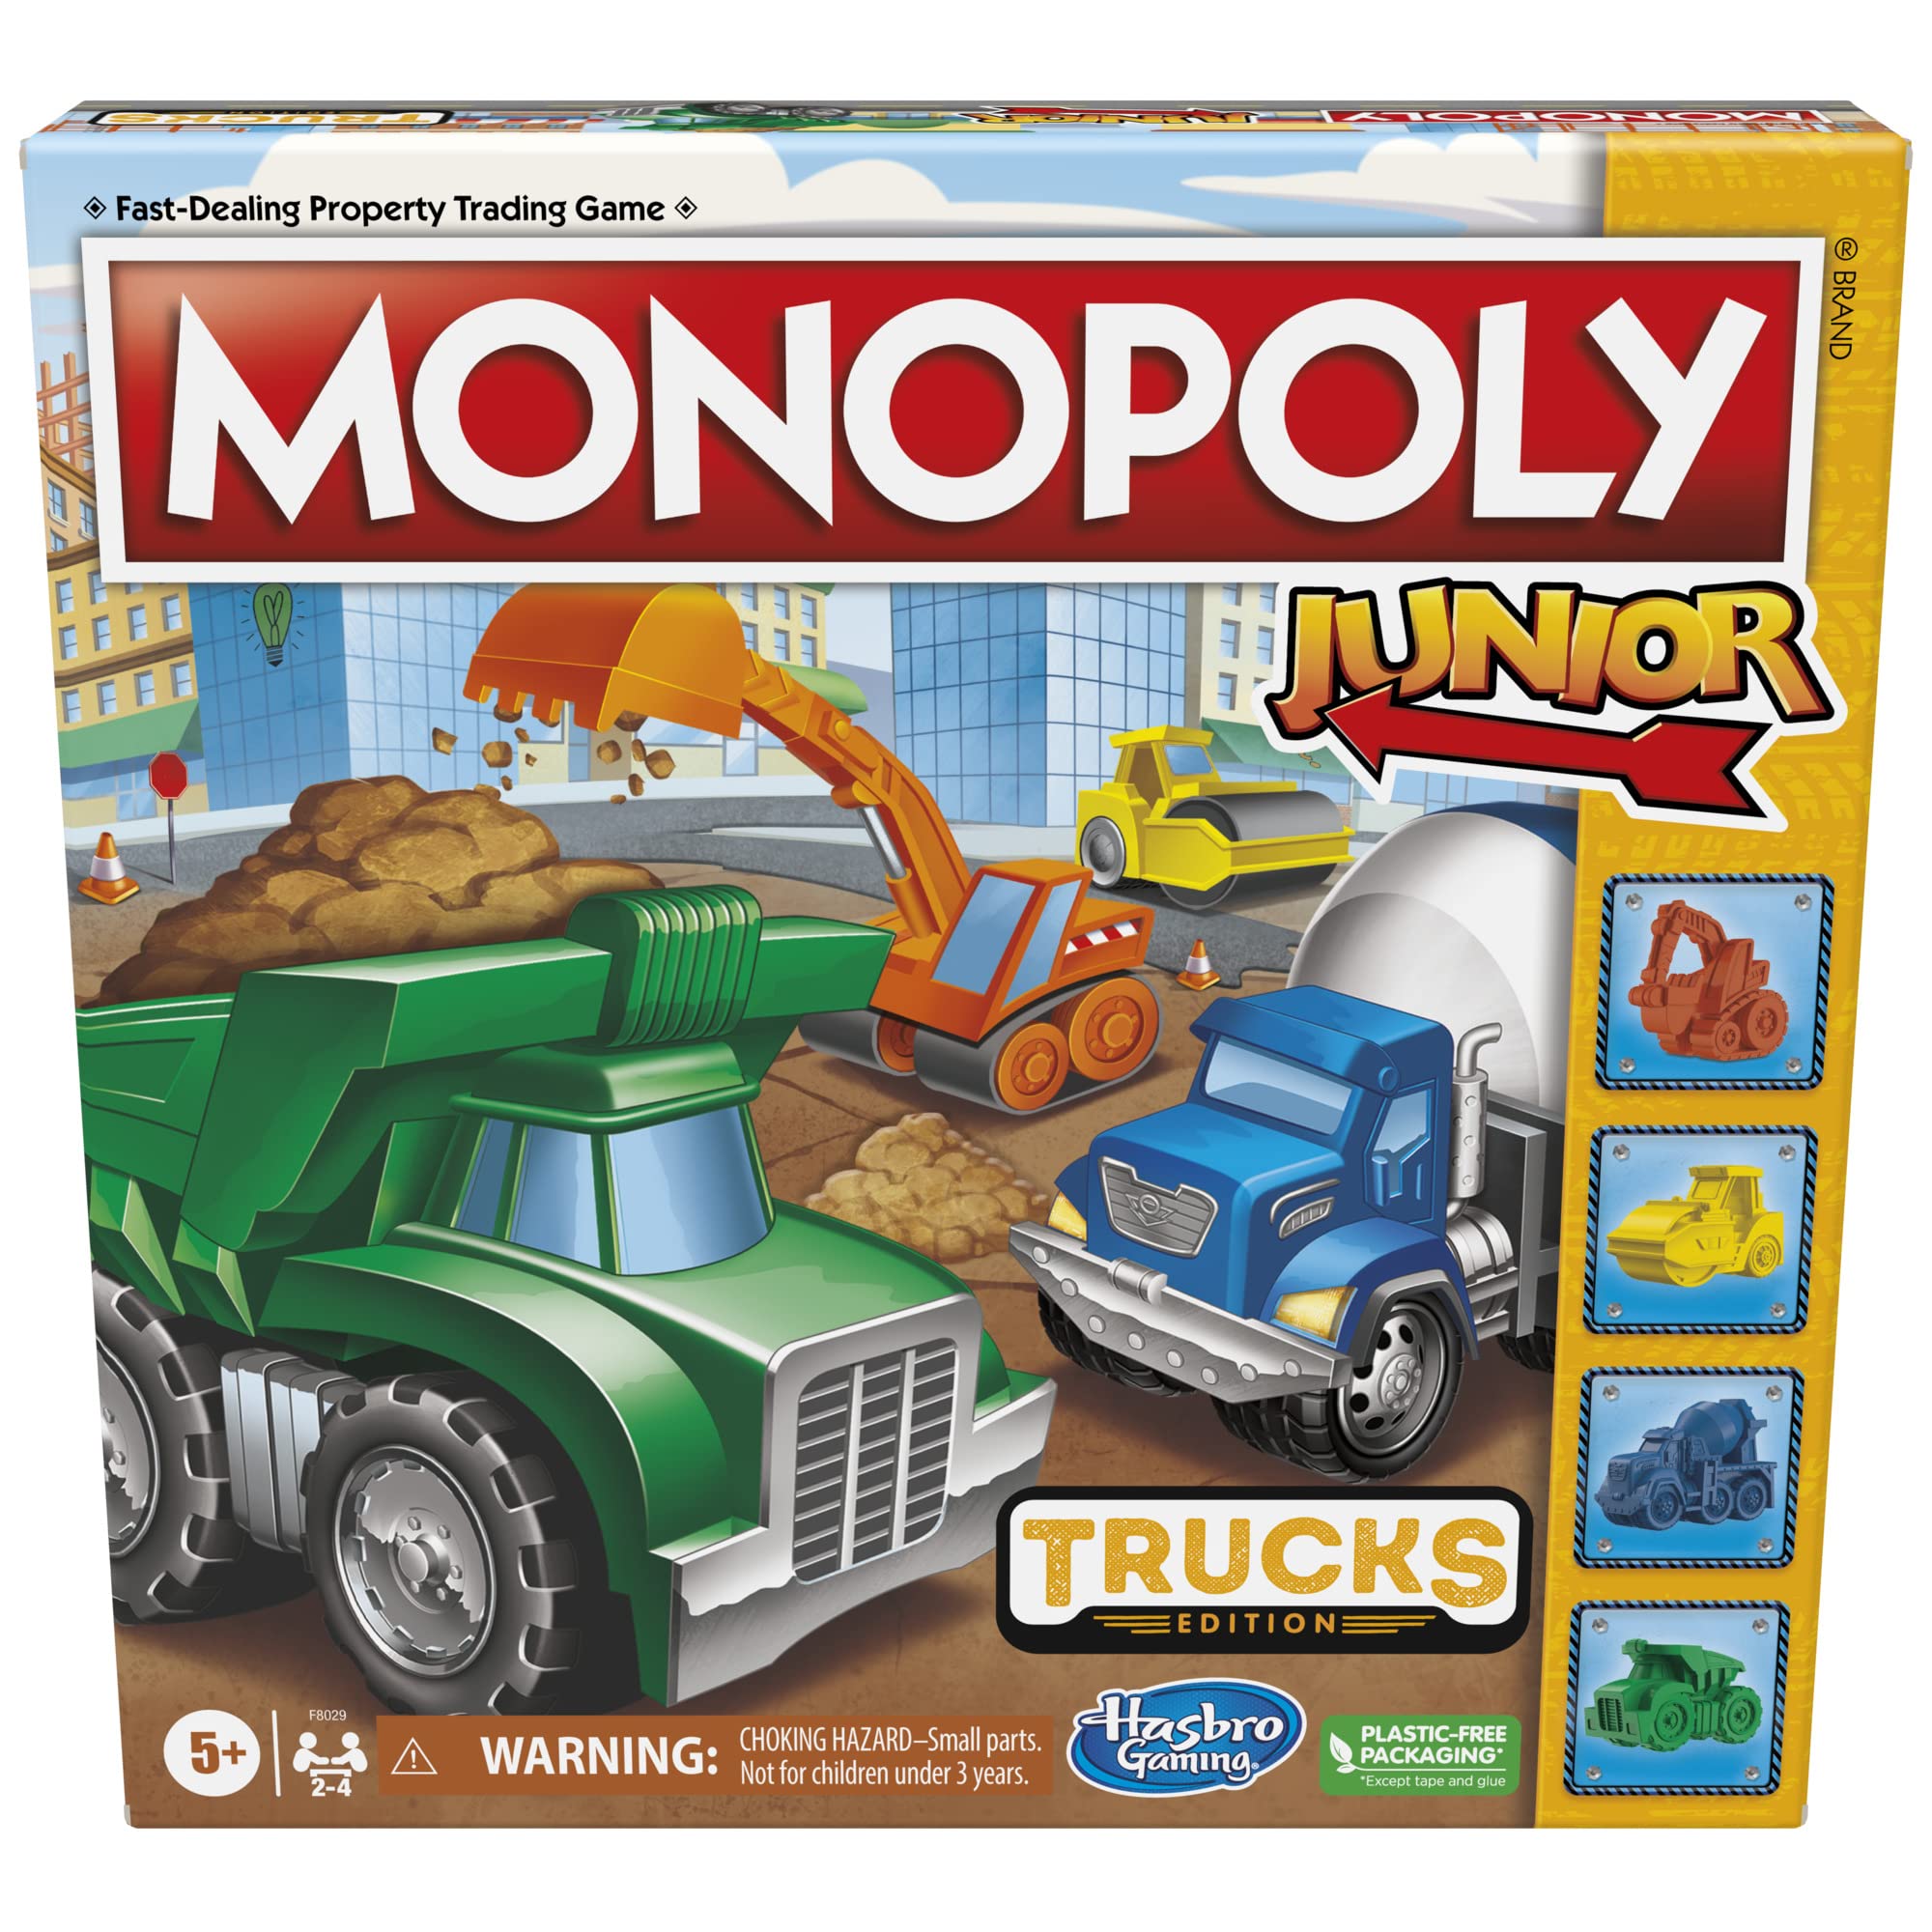 Monopoly ジュニア トラックエディション ボードゲーム モノポリーゲーム 5歳以上 キッズボードゲーム 2~4人用 キッズゲーム キッズギフト Amazon限定 素早く簡単に遊べるモノポリーゲーム この商品について素早く簡単に遊べるモノポリーゲーム: 街中で楽しいプロジェクトに備えましょう。 このMonopoly Junior: Trucks Editionゲームで、子供たちはフォアパーソンになり、勝つための最高のトラッククルーを集めることを想像できます。トラックトークン4枚:モノポリージュニアゲームトークン4枚入り。 子供たちはお気に入りの建設トラックを選ぶことができます: ショベルカー、スチームローラー、セメントトラック、ダンプトラック。トラックをテーマにしたゲームボード: このモノポリージュニアキッズゲームでは、ごみ収集車、レッカー車、ブルドーザー、消防車などの16個の鮮やかなイラスト付き車両に置き換えられます。クルーを組み立て、家を集めましょう: プレイヤーはボードの上を移動し、車両を購入してクルーを集めます。 たくさん所有するほど、家賃を集めることができます。 一番お金を払ったプレイヤーが勝ちます。シンプルなモノポリーゲームプレイ: この子供用ゲームは、5歳以上向けのモノポリーボードゲームの楽しい入門用です。 若いプレーヤーにとって、速く楽しくエキサイティングなデザイン。トラックファンへのギフトに最適: このトラックをテーマにした幼稚園ゲームをプレイデート、ファミリーゲームナイト、雨の日に。 キッズゲームは、男の子、女の子、5歳以上の子供への素晴らしいギフトにもなります。商品の説明最高のトラッククルーを集めて勝ちましょう。 このモノポリージュニア:トラックエディションボードゲームでは、子供たちはモノポリータウンの改善プロジェクトの大きなリストを持つ先見者であることを想像できます。 まず、プレイヤーはお気に入りの建設トラックトークンを選択します。 その後、ゲームボードの周りを移動し、クルーをまとめます。 プロパティは、トラックファンが知っていて愛している建設車両に置き換えられます。 プレイヤーが所有する車両が多いほど、他のプレイヤーから集めることができる家賃が増えます。 1人のプレイヤーが破産すると、ゲームは終わり、最もお金を持つプレイヤーが勝ちます! この楽しい子供用ボードゲームは2~4人でトラックを愛する子供たちへの素晴らしい贈り物です。男の子、女の子、5歳以上の子供のための素晴らしいファミリーゲームです。 Hasbro、Hasbro Gaming、Parker Brothers、Monopolyの名前とロゴ、ゲームボードの特徴的なデザイン、四隅の正方形、Mr. モノポリーの名前とキャラクター、ボードとプレイピースの特徴的な要素のそれぞれは、Hasbroのプロパティトレーディングゲームとゲーム用品の商標です。 5